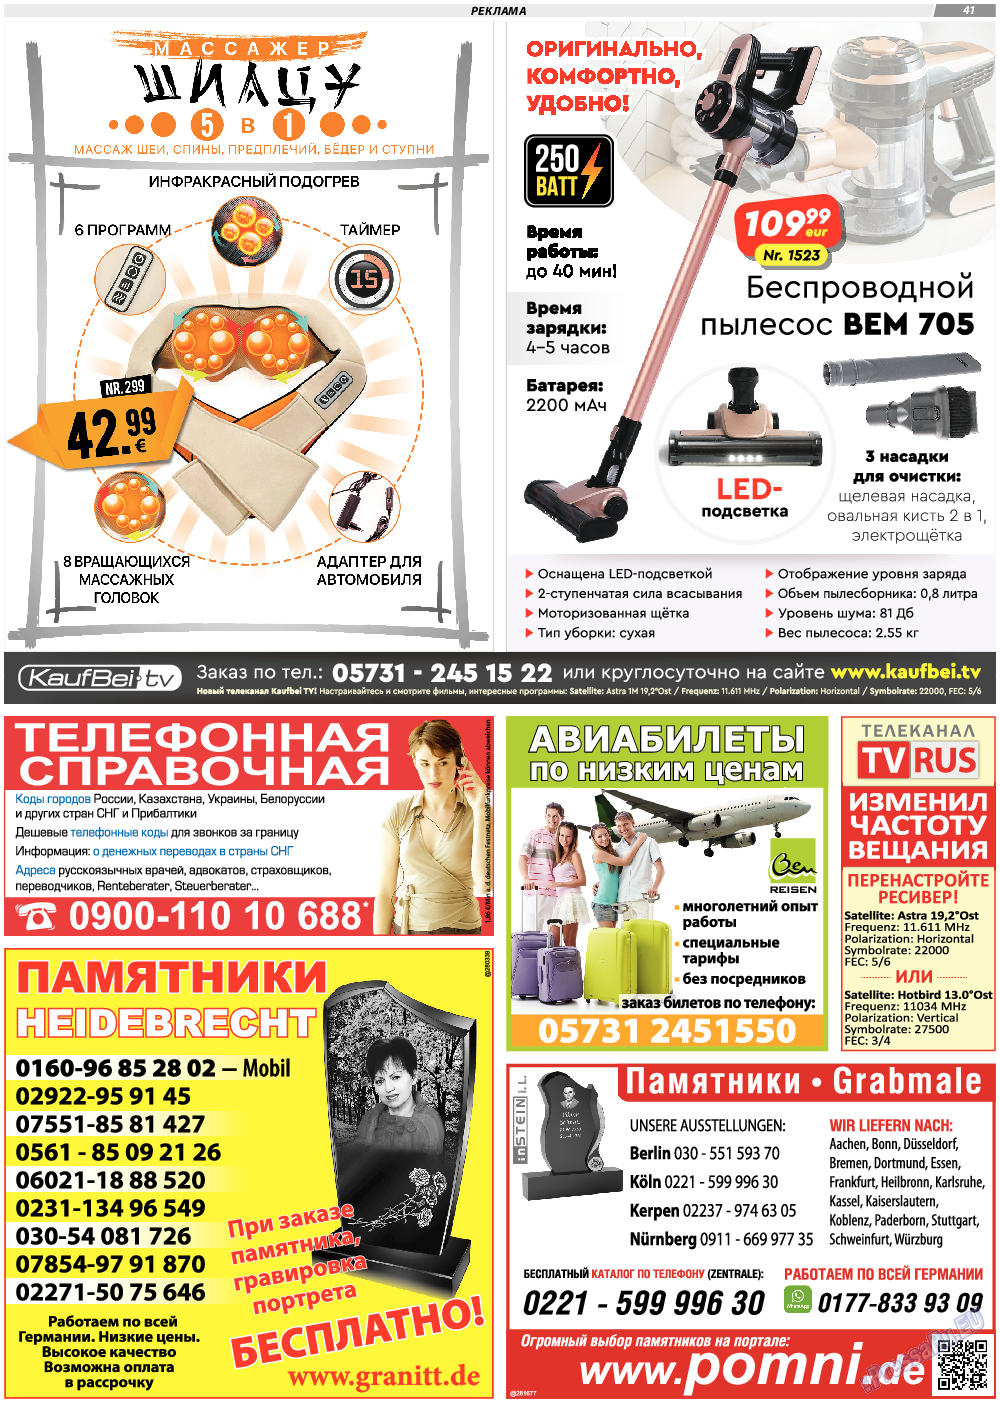 TVrus, газета. 2021 №10 стр.41